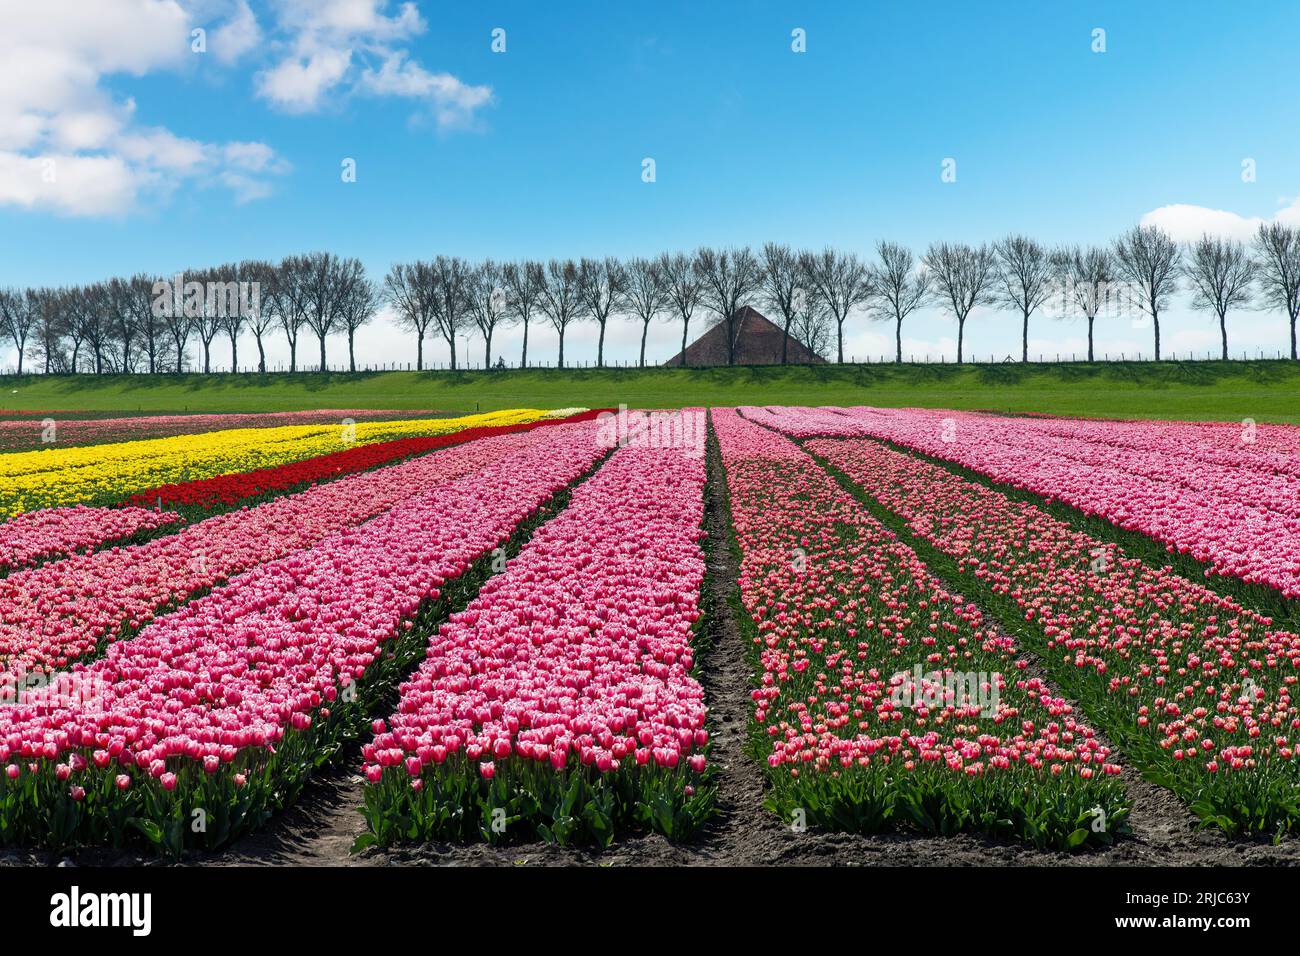 Panoramaaussicht auf lange Reihen von rosa, gelben und roten Tulpen auf einem Feld in den Niederlanden entlang eines typischen Deichs, der von Bäumen gesäumt ist, und eines Bauernhofdachs Stockfoto